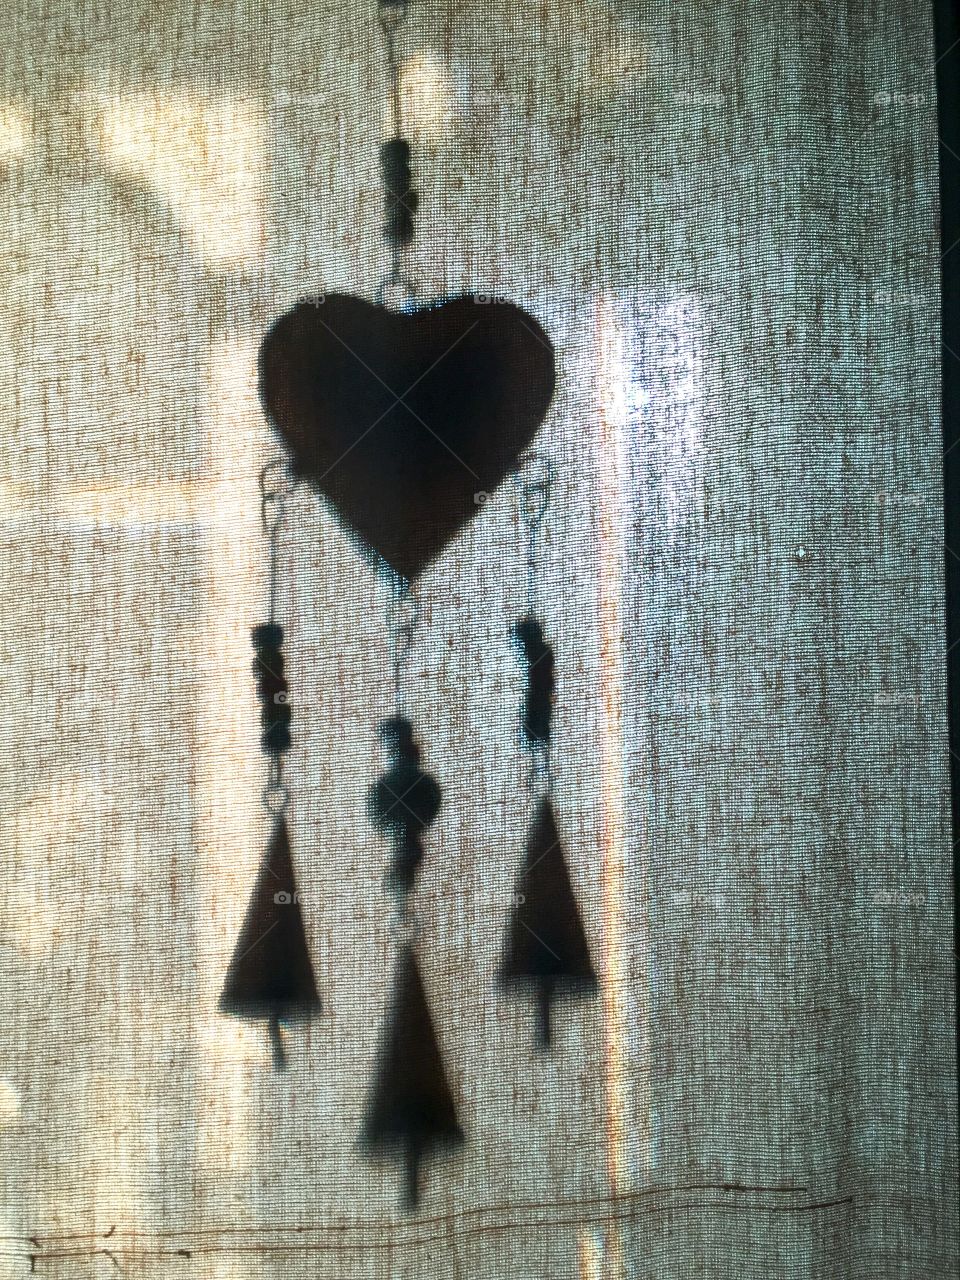 Heart shadows